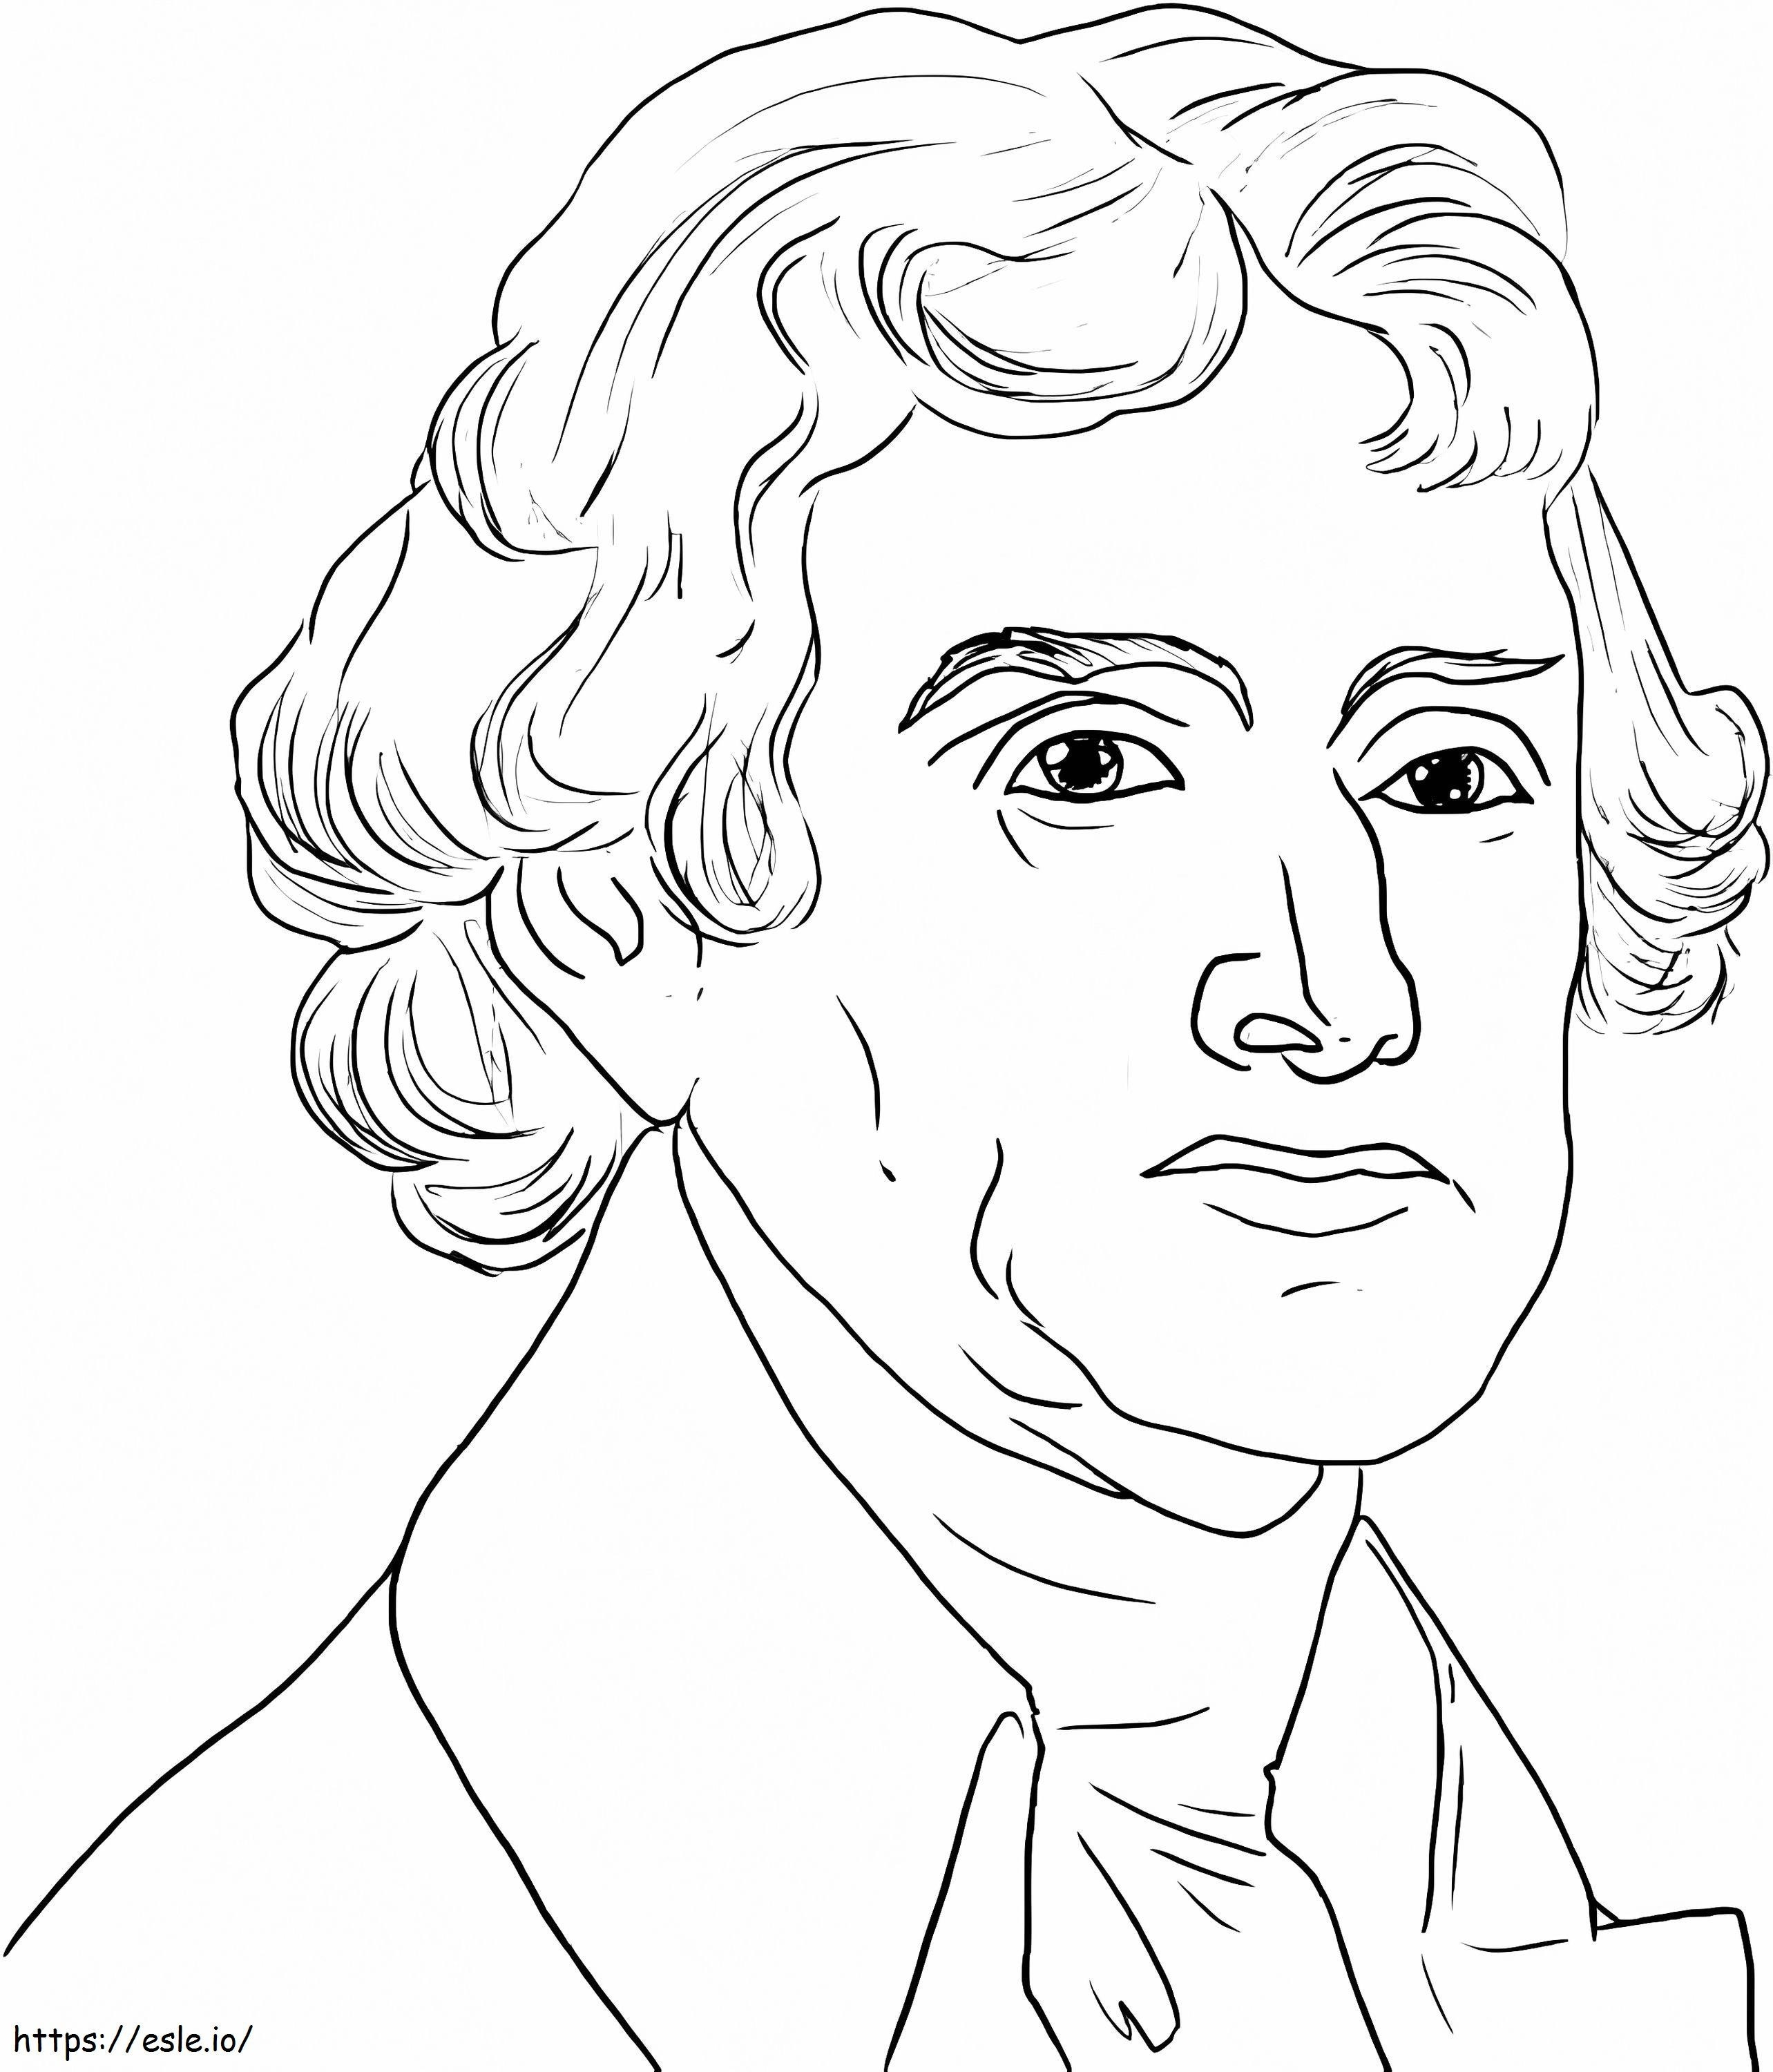 Thomas Jefferson Portrait coloring page